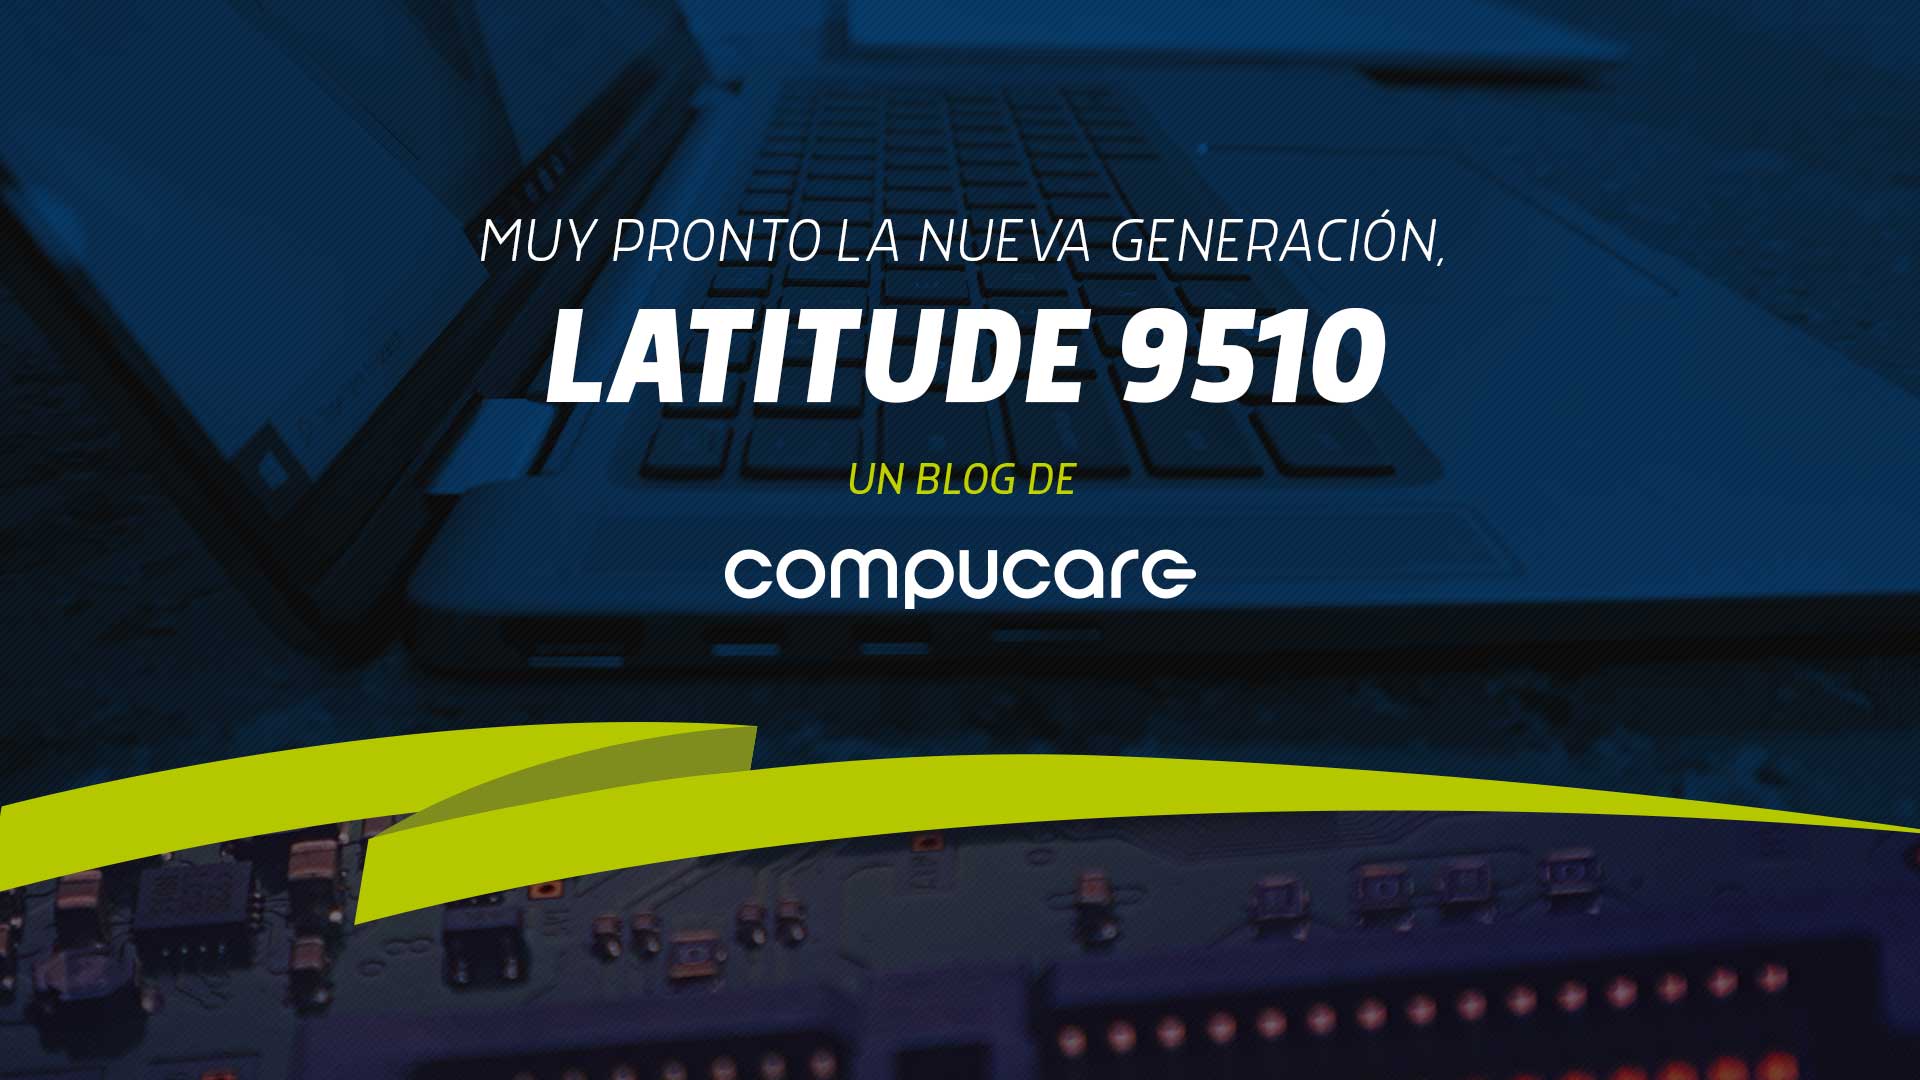 Muy pronto la nueva generación, Latitude 9510